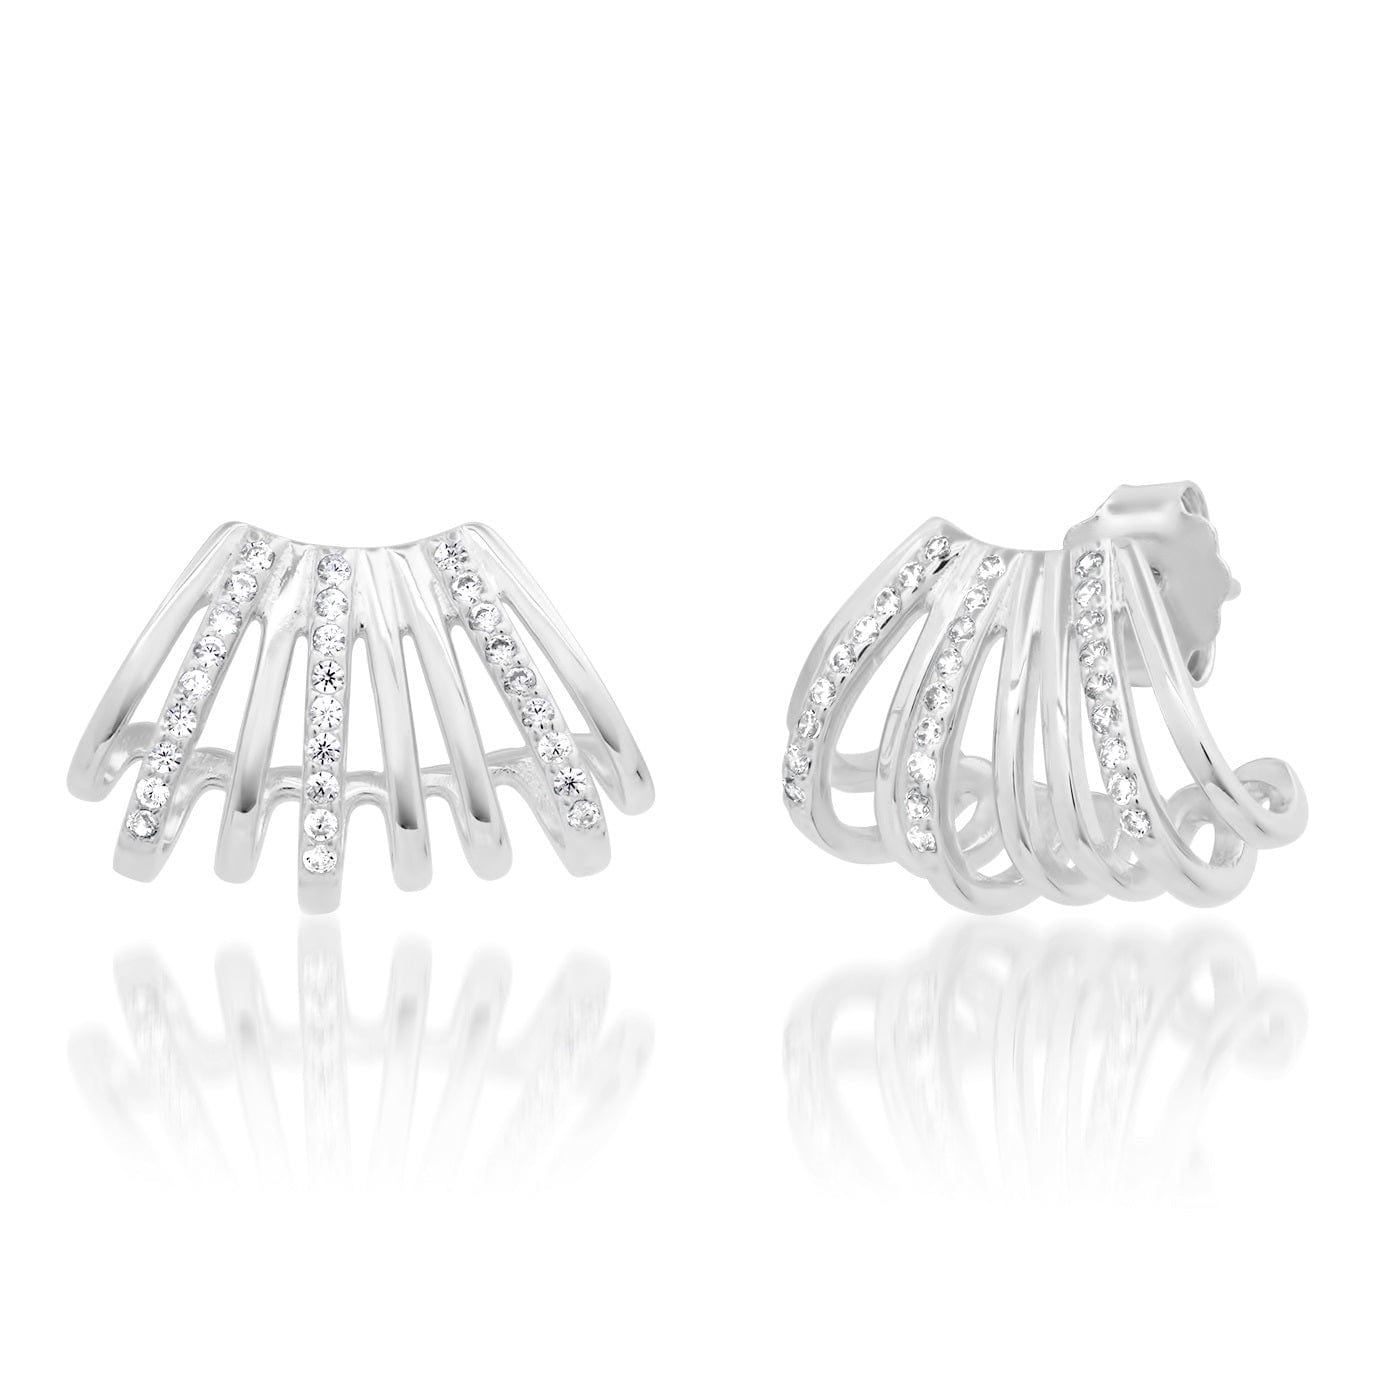 TAI JEWELRY Earrings Silver Multi-Row Huggie